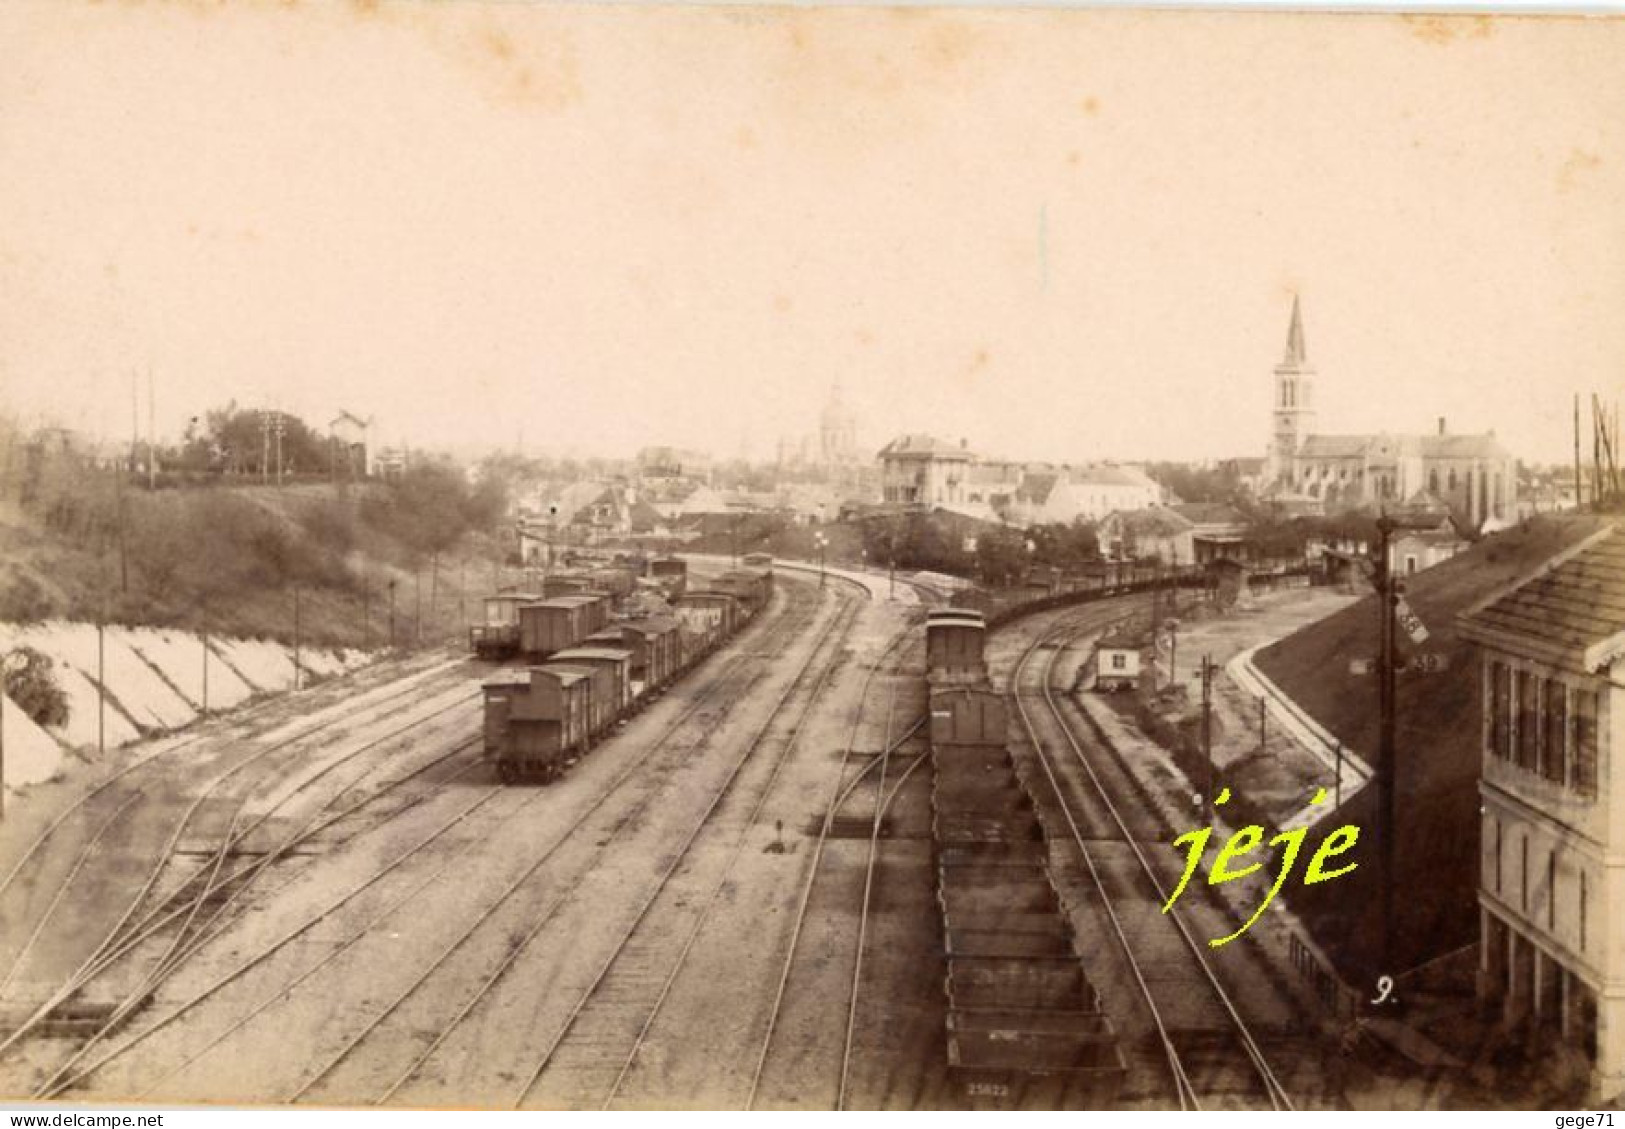 Chalon Sur Saone - Gare De Triage - Photo Paul Bourgeois 1883 - Plm - Train - Trenes